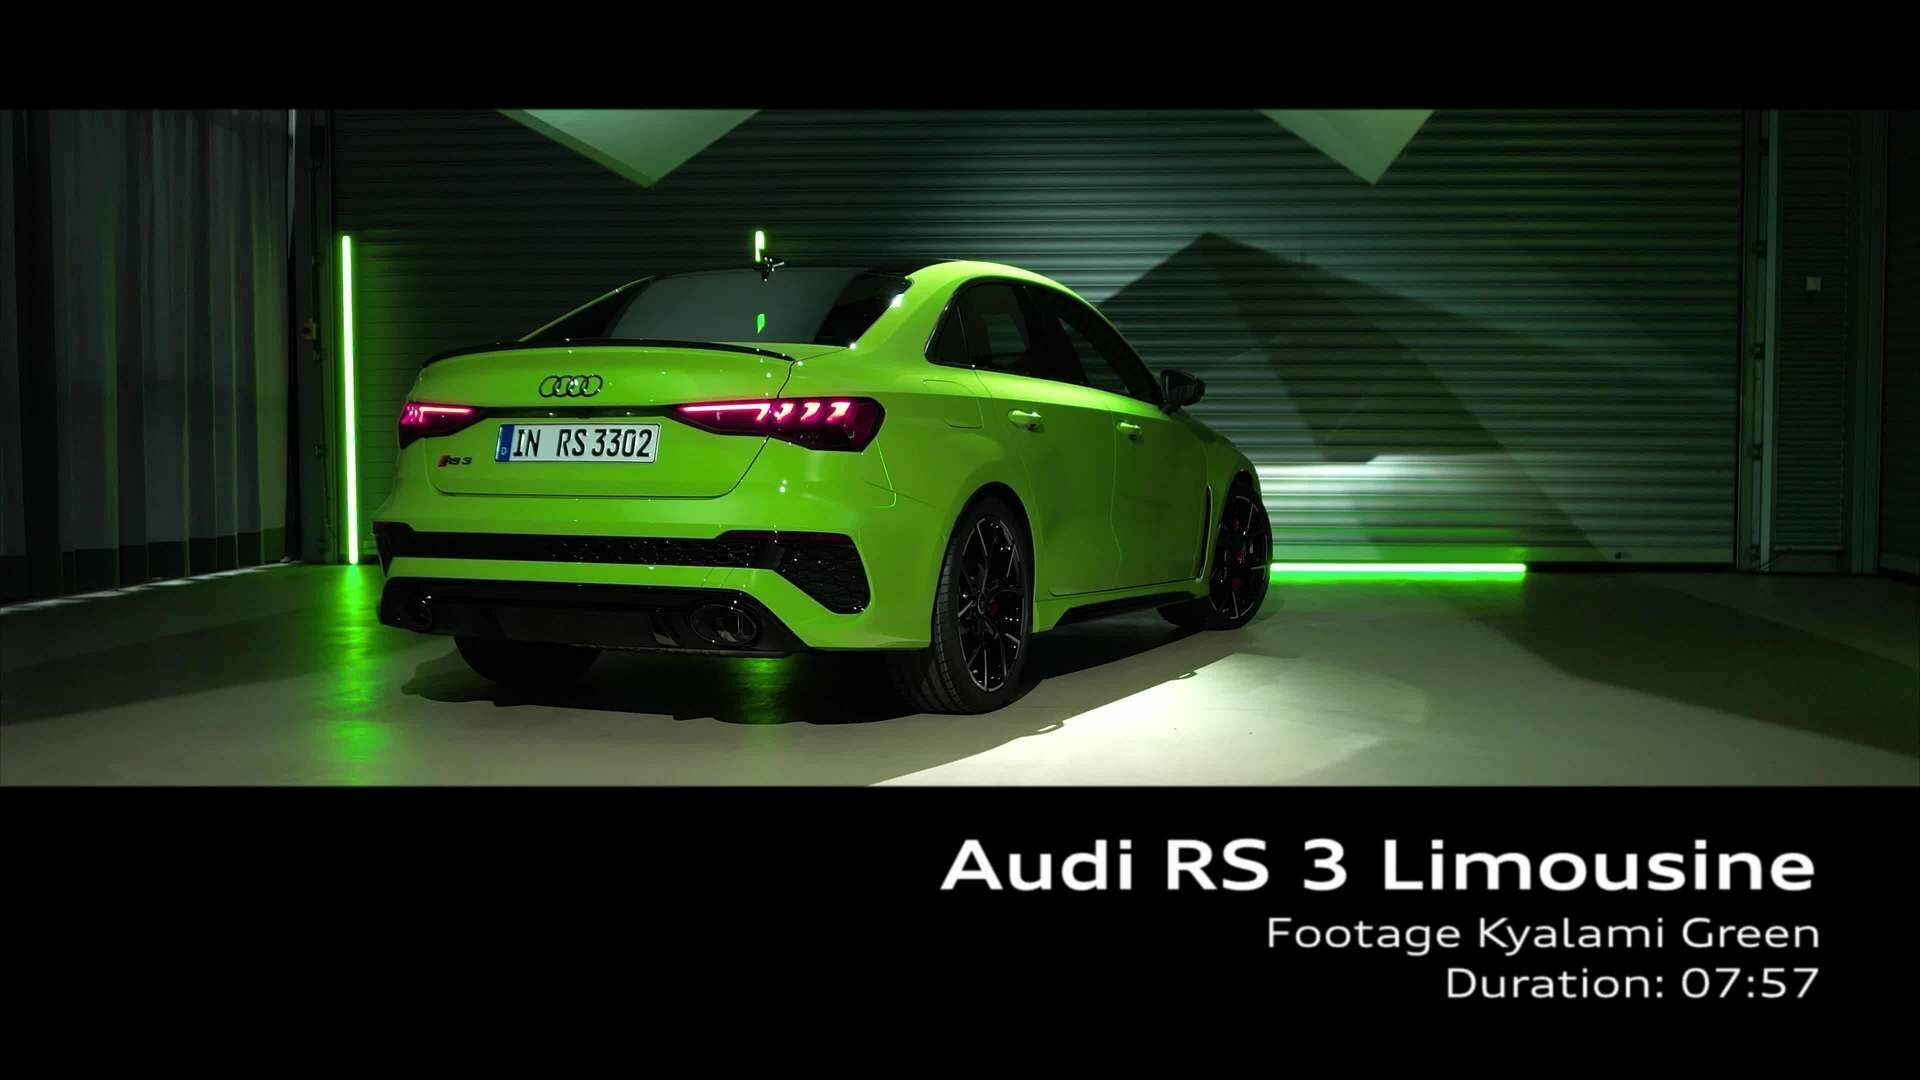 Footage: "Studio" Audi RS 3 Limousine